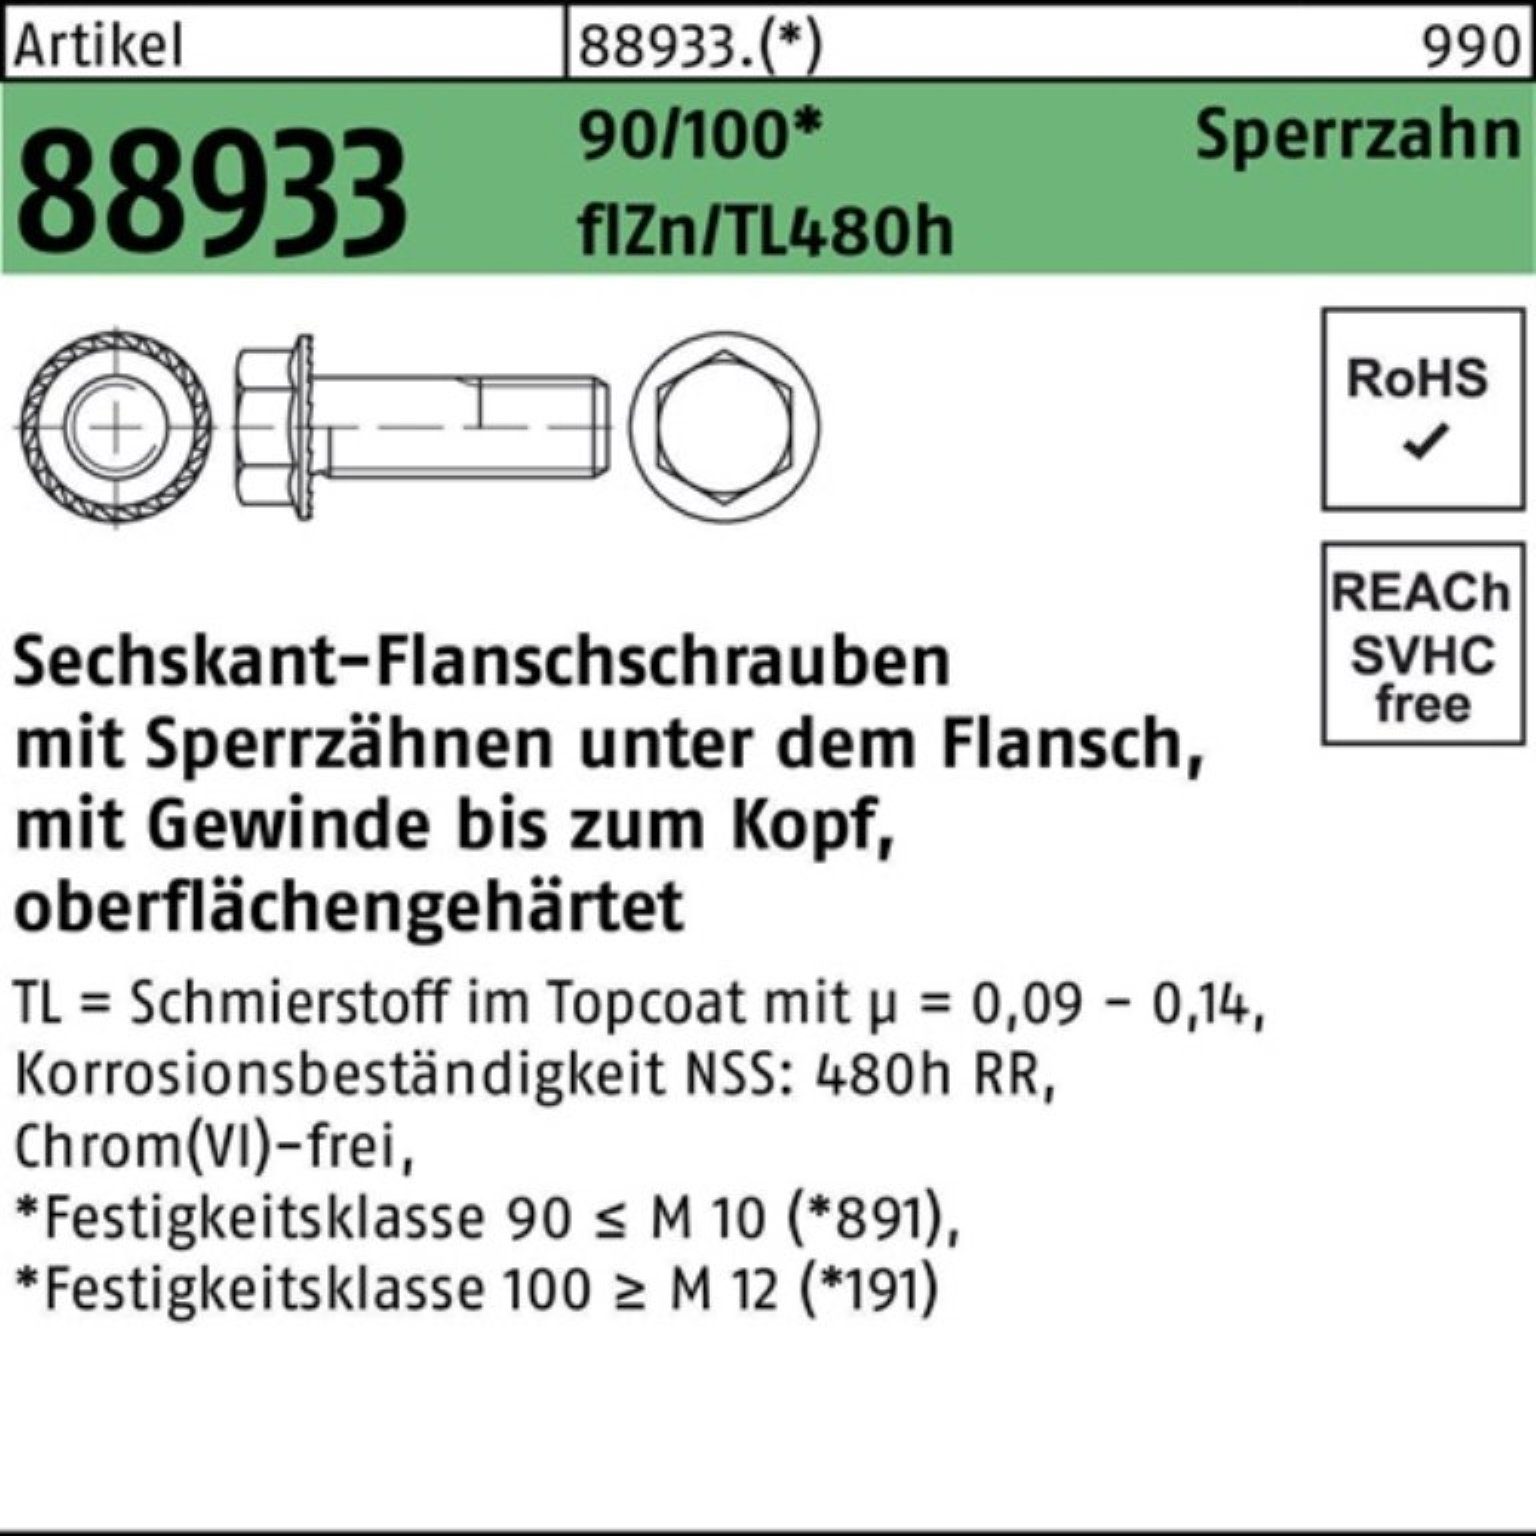 Reyher Pack Sperrz. VG Sechskantflanschschraube 88933 R Schraube M12x20 f 100er 90/100